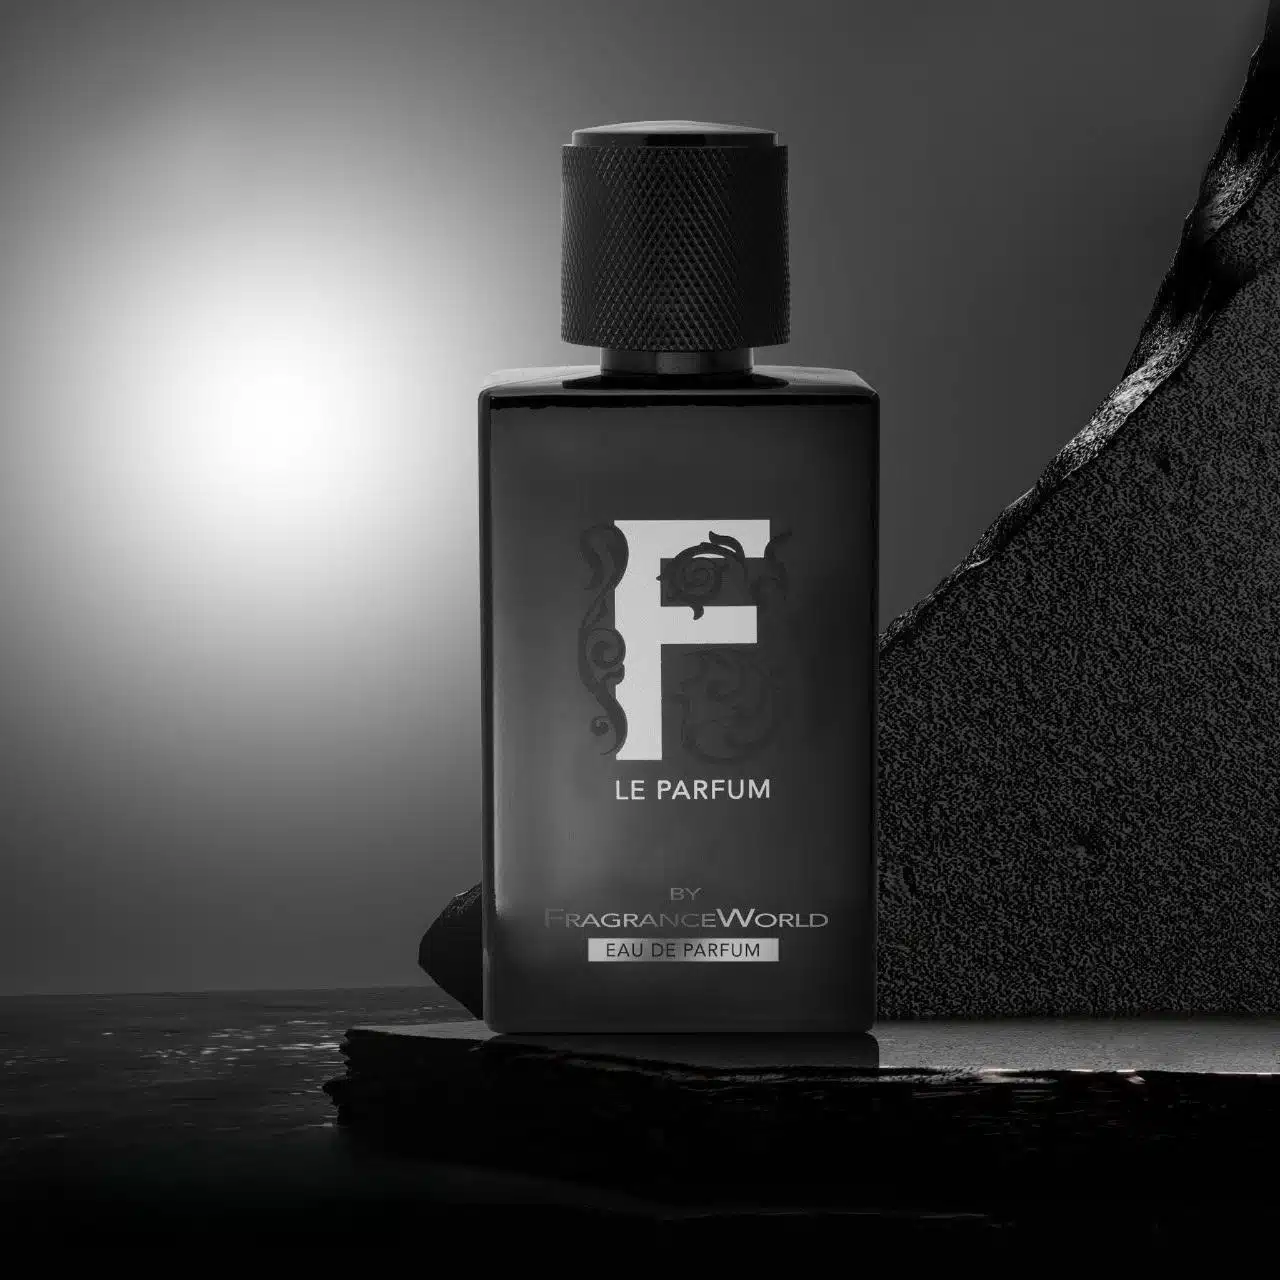 F Le Parfum Eau De Parfum By Fragrance World